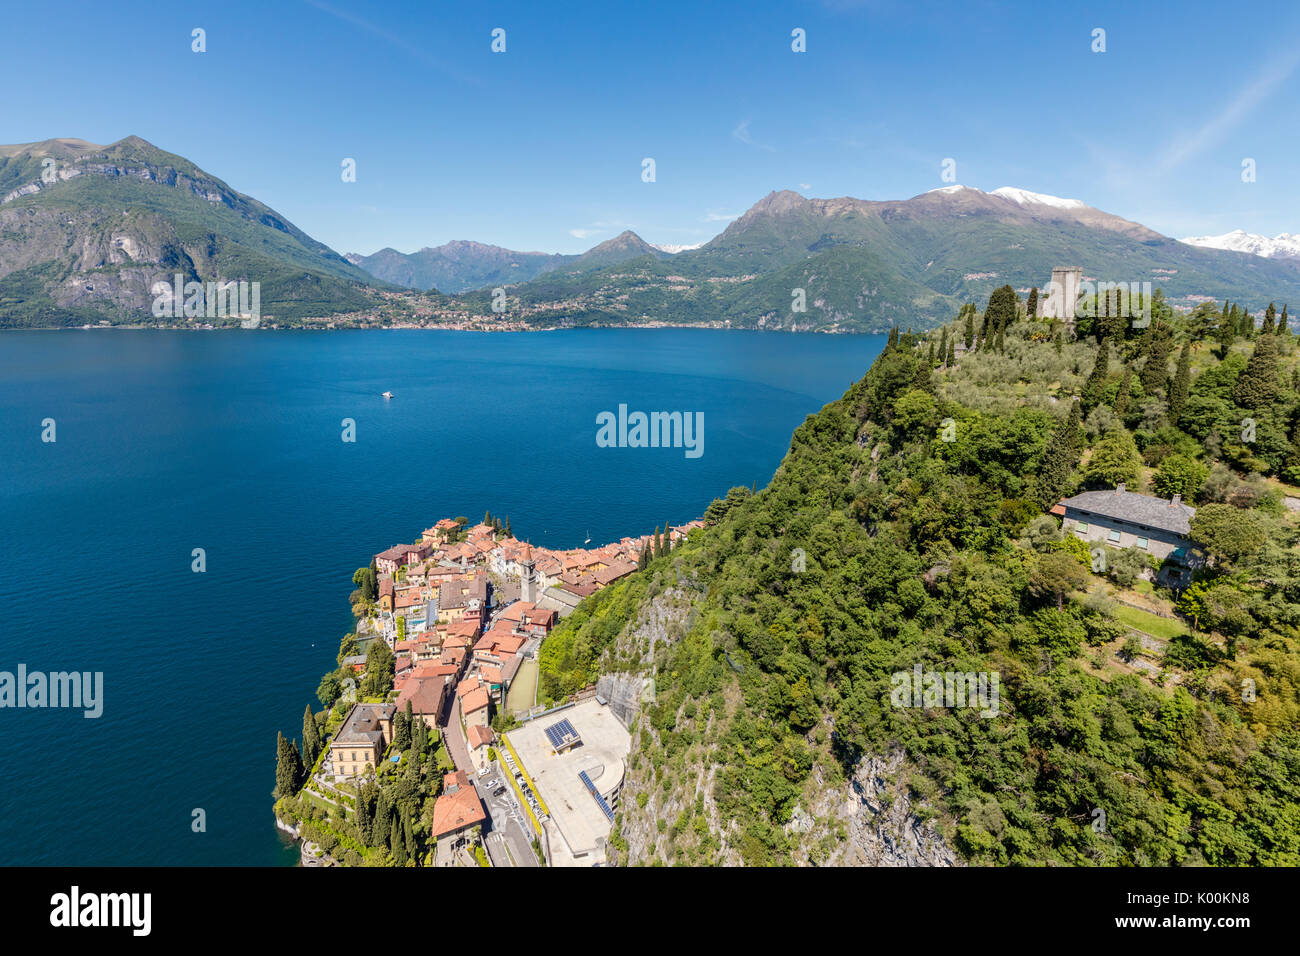 Vue aérienne de la colline verte et le château surplombant le lac de Côme Varenna entouré par la province de Lecco Lombardie Italie Europe Banque D'Images